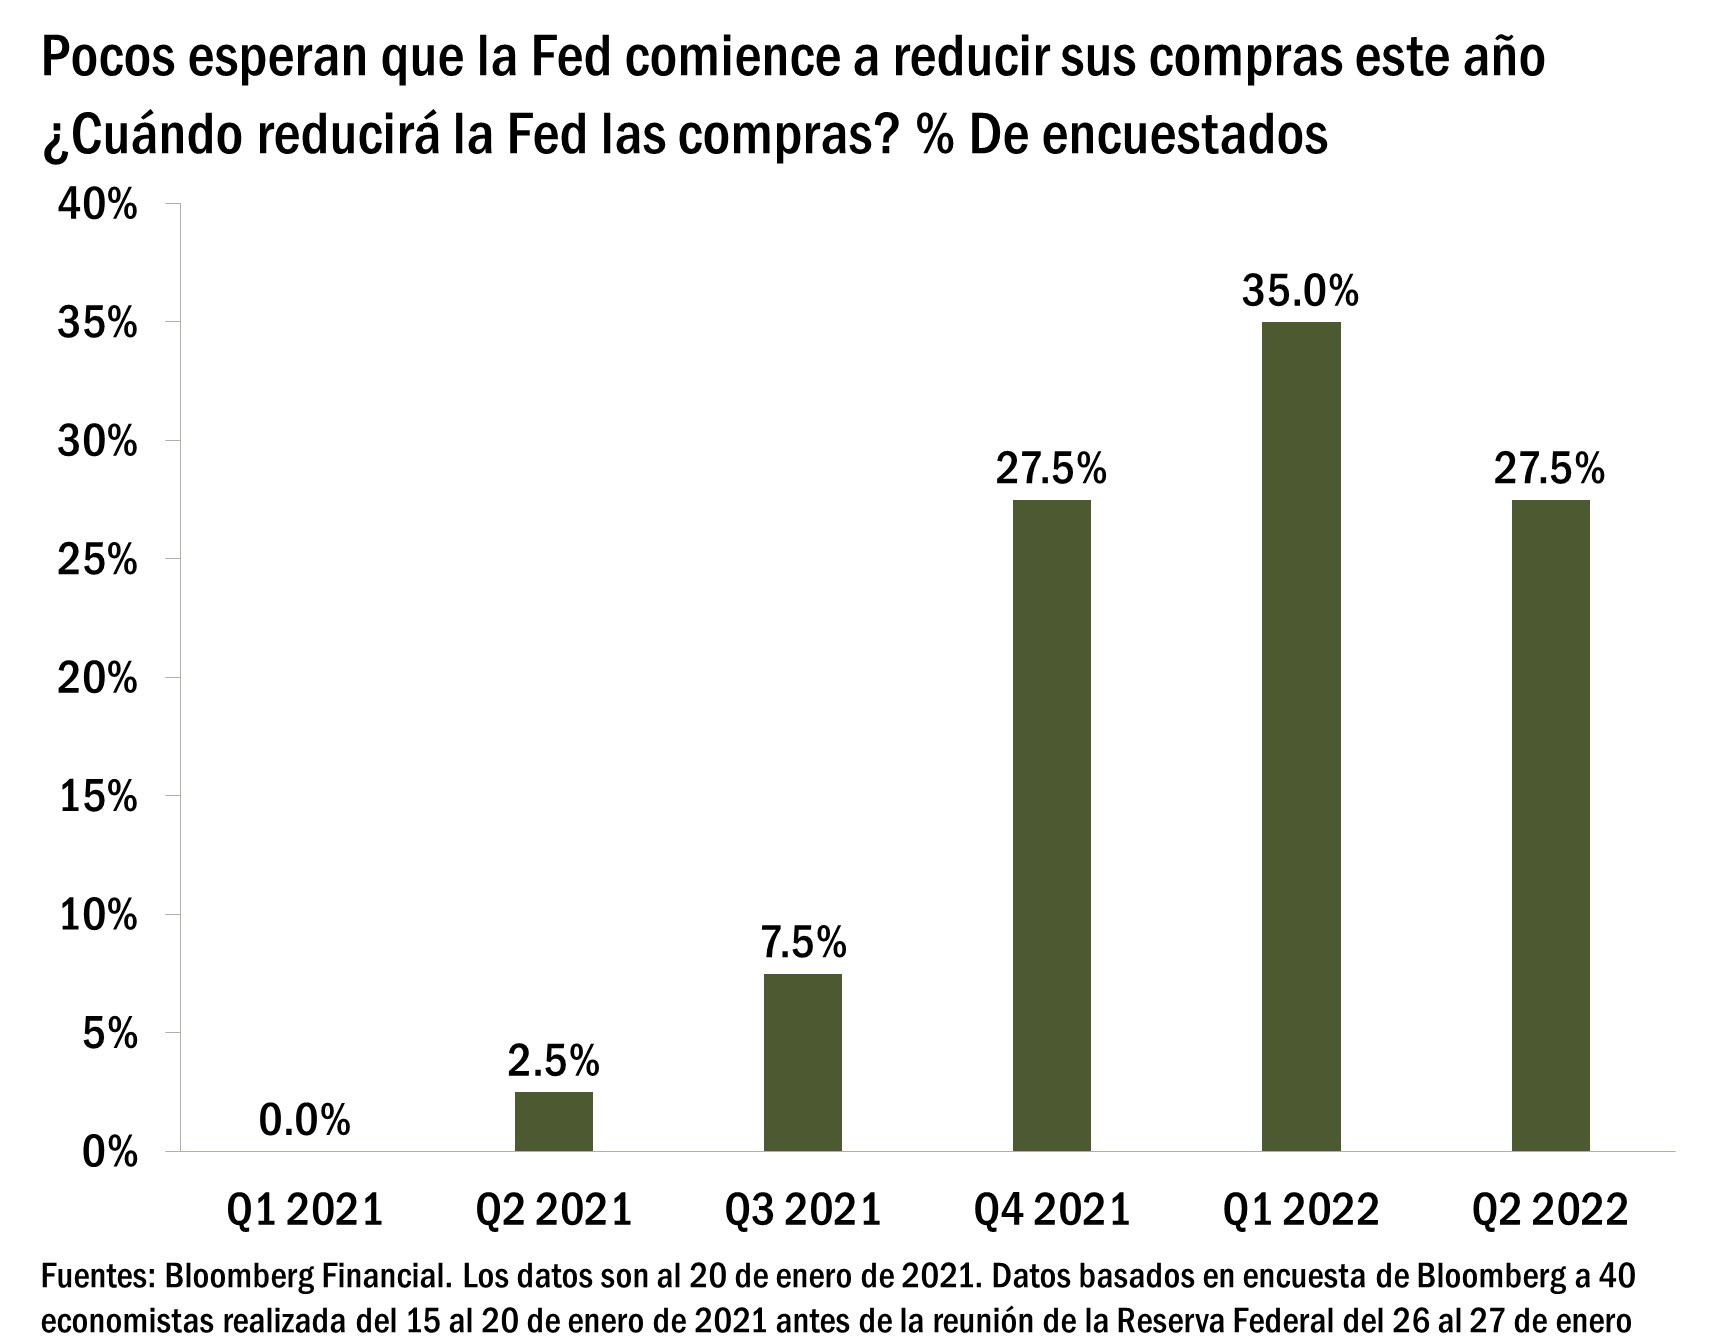 El gráfico muestra qué porcentaje de los 40 economistas encuestados por Bloomberg creen que la Reserva Federal comenzará a reducir las compras de activos para el primer trimestre de 2021, el segundo trimestre de 2021, el tercer trimestre de 2021, el cuarto trimestre de 2021, el primer trimestre de 2022 o el segundo trimestre de 2022. La encuesta se realizó del 15 al 20 de enero de 2021 antes de la Reserva Federal del 26 al 27 de enero de 2021. El 0% de los encuestados esperaba que la Fed comenzara a reducirse en el primer trimestre de 2021, el 2,5% en el segundo trimestre de 2021, el 7,5% en el tercer trimestre de 2021, el 27,5% en el cuarto trimestre de 2021, el 35,0% en el primer trimestre de 2022 y el 27,5% en el segundo trimestre de 2022.